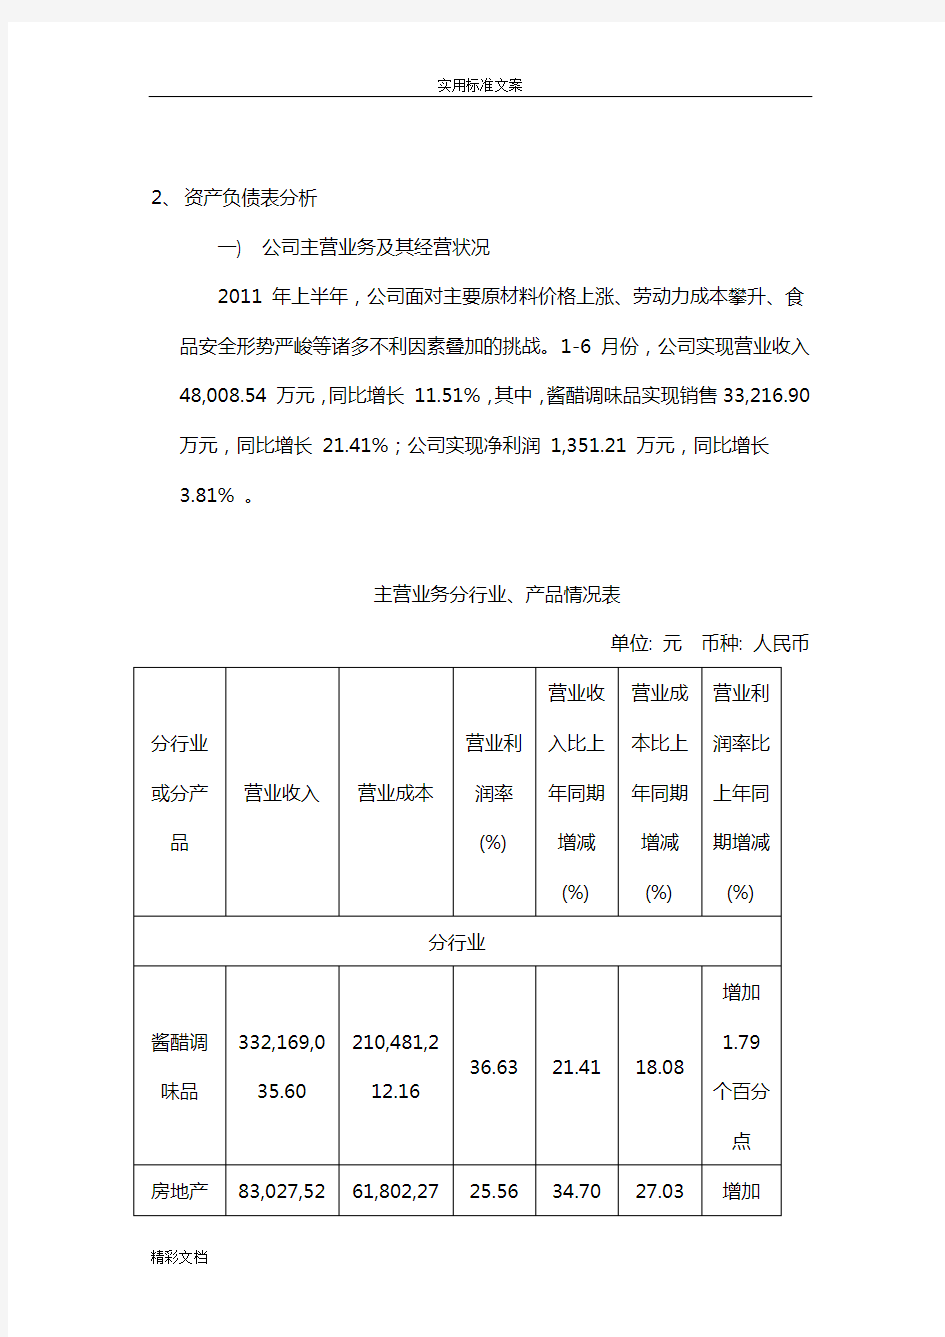 江苏恒顺醋业财务报表分析报告报告材料作业